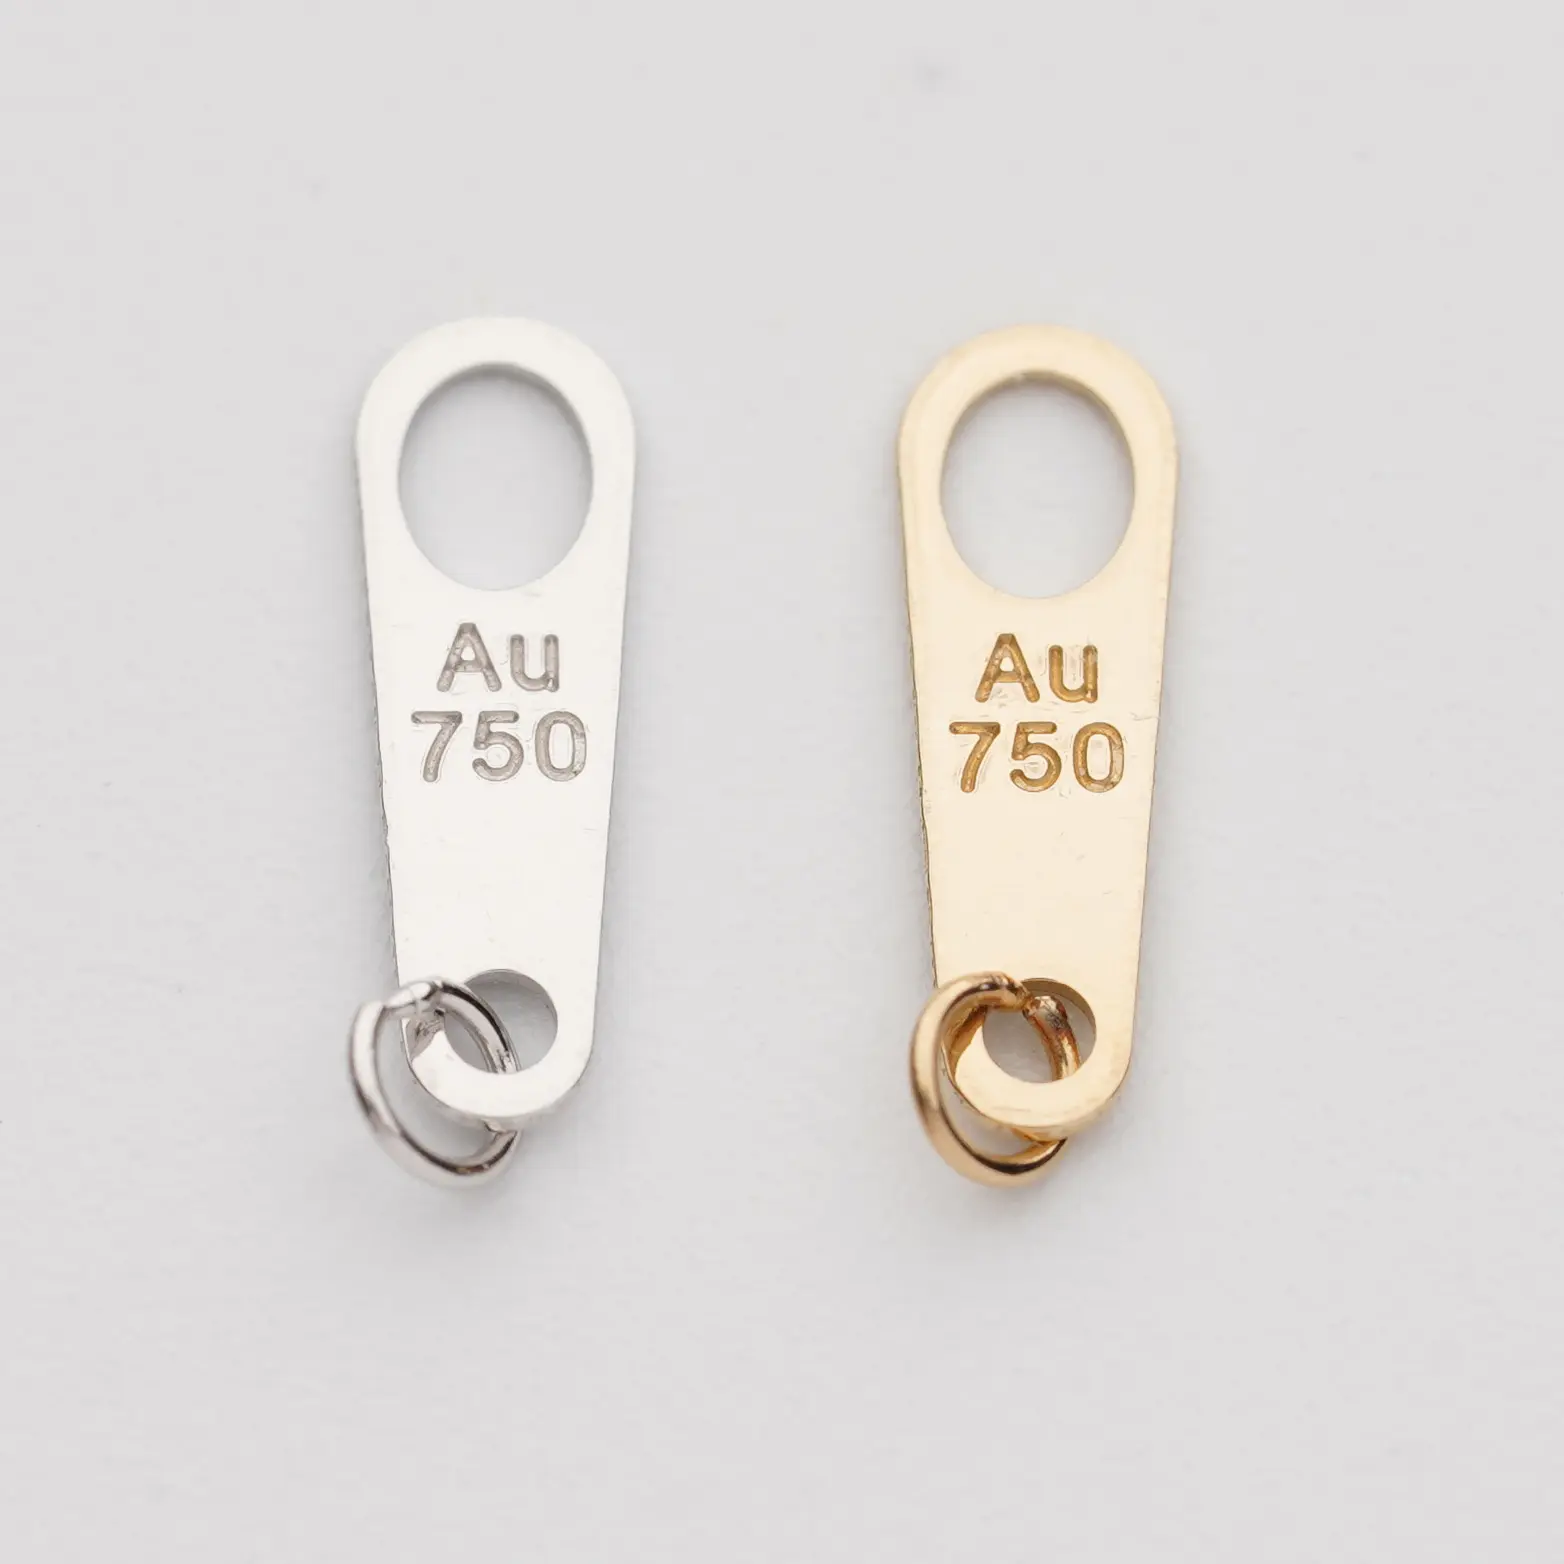 18K AU750 rantai kalung gelang perhiasan menemukan kompas Kuning Putih emas konektor untuk membuat